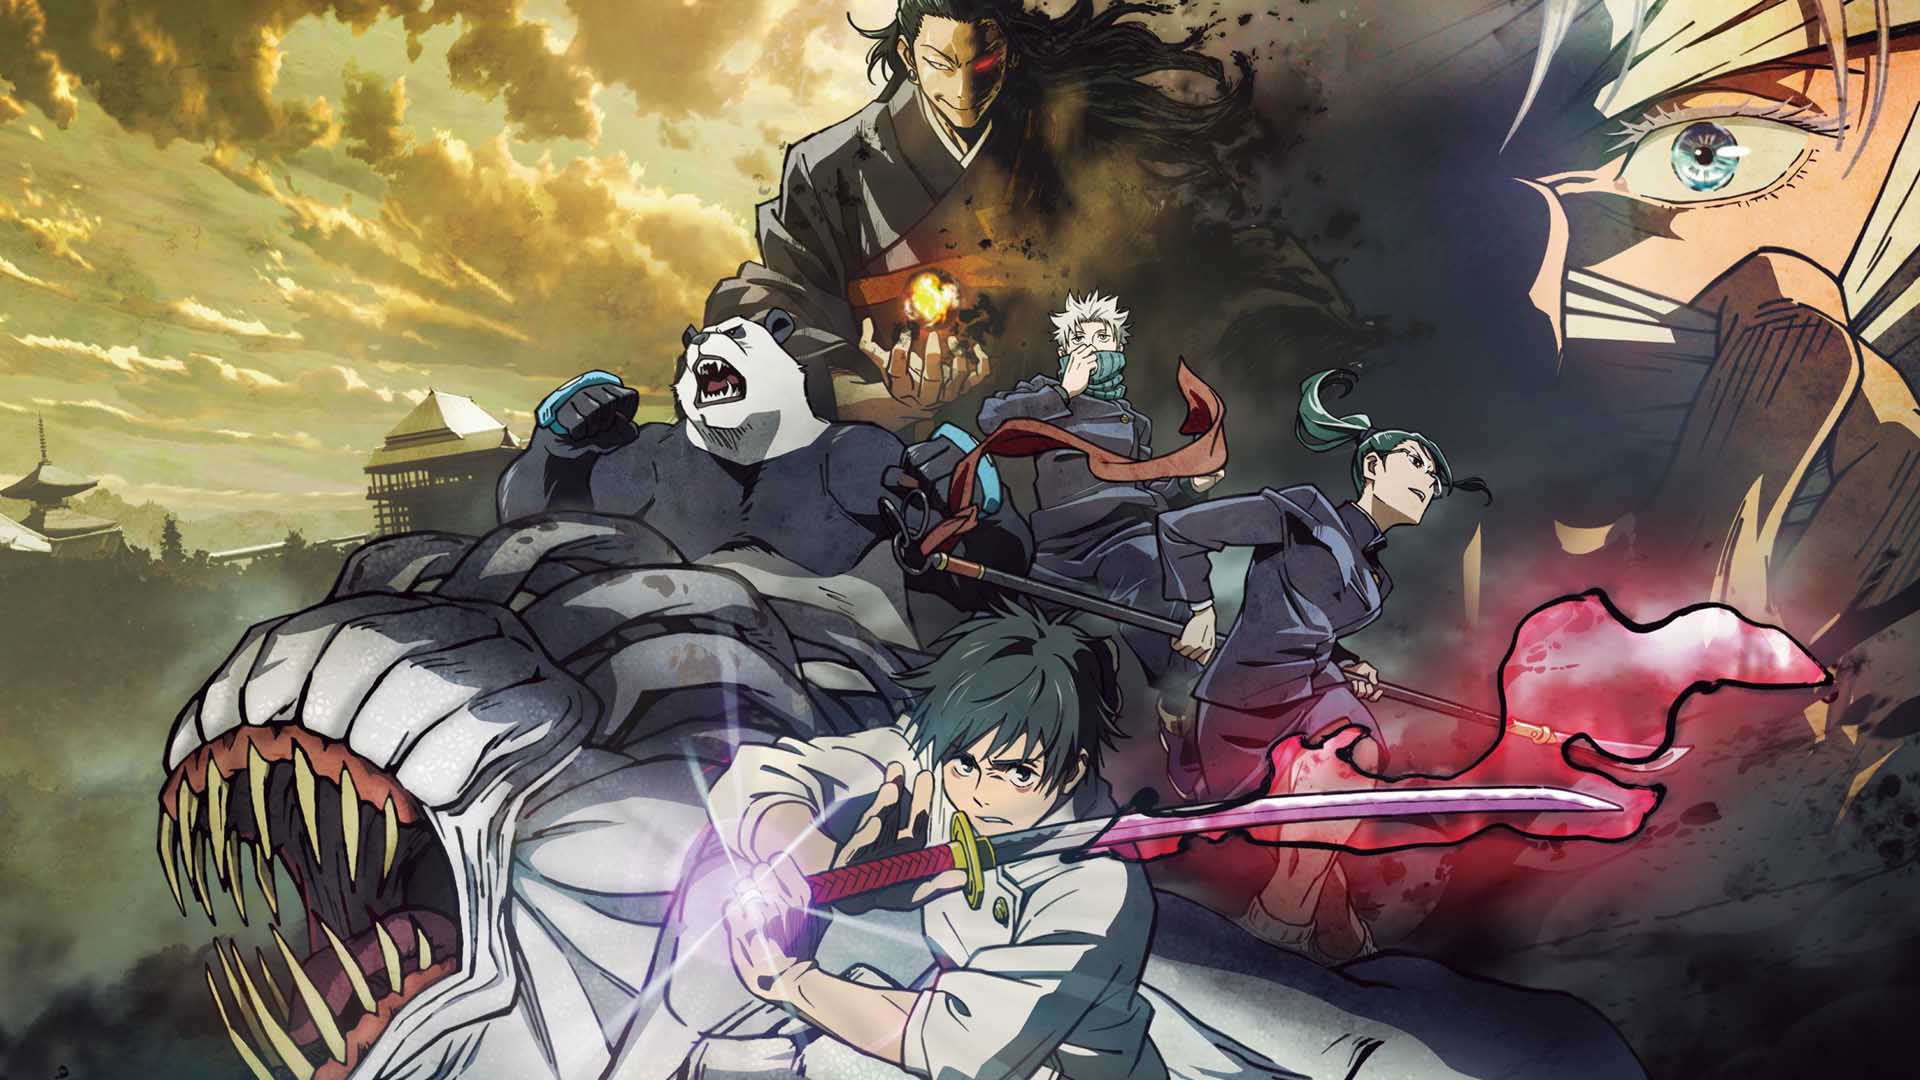 Jujutsu kaisen 0 movie release date